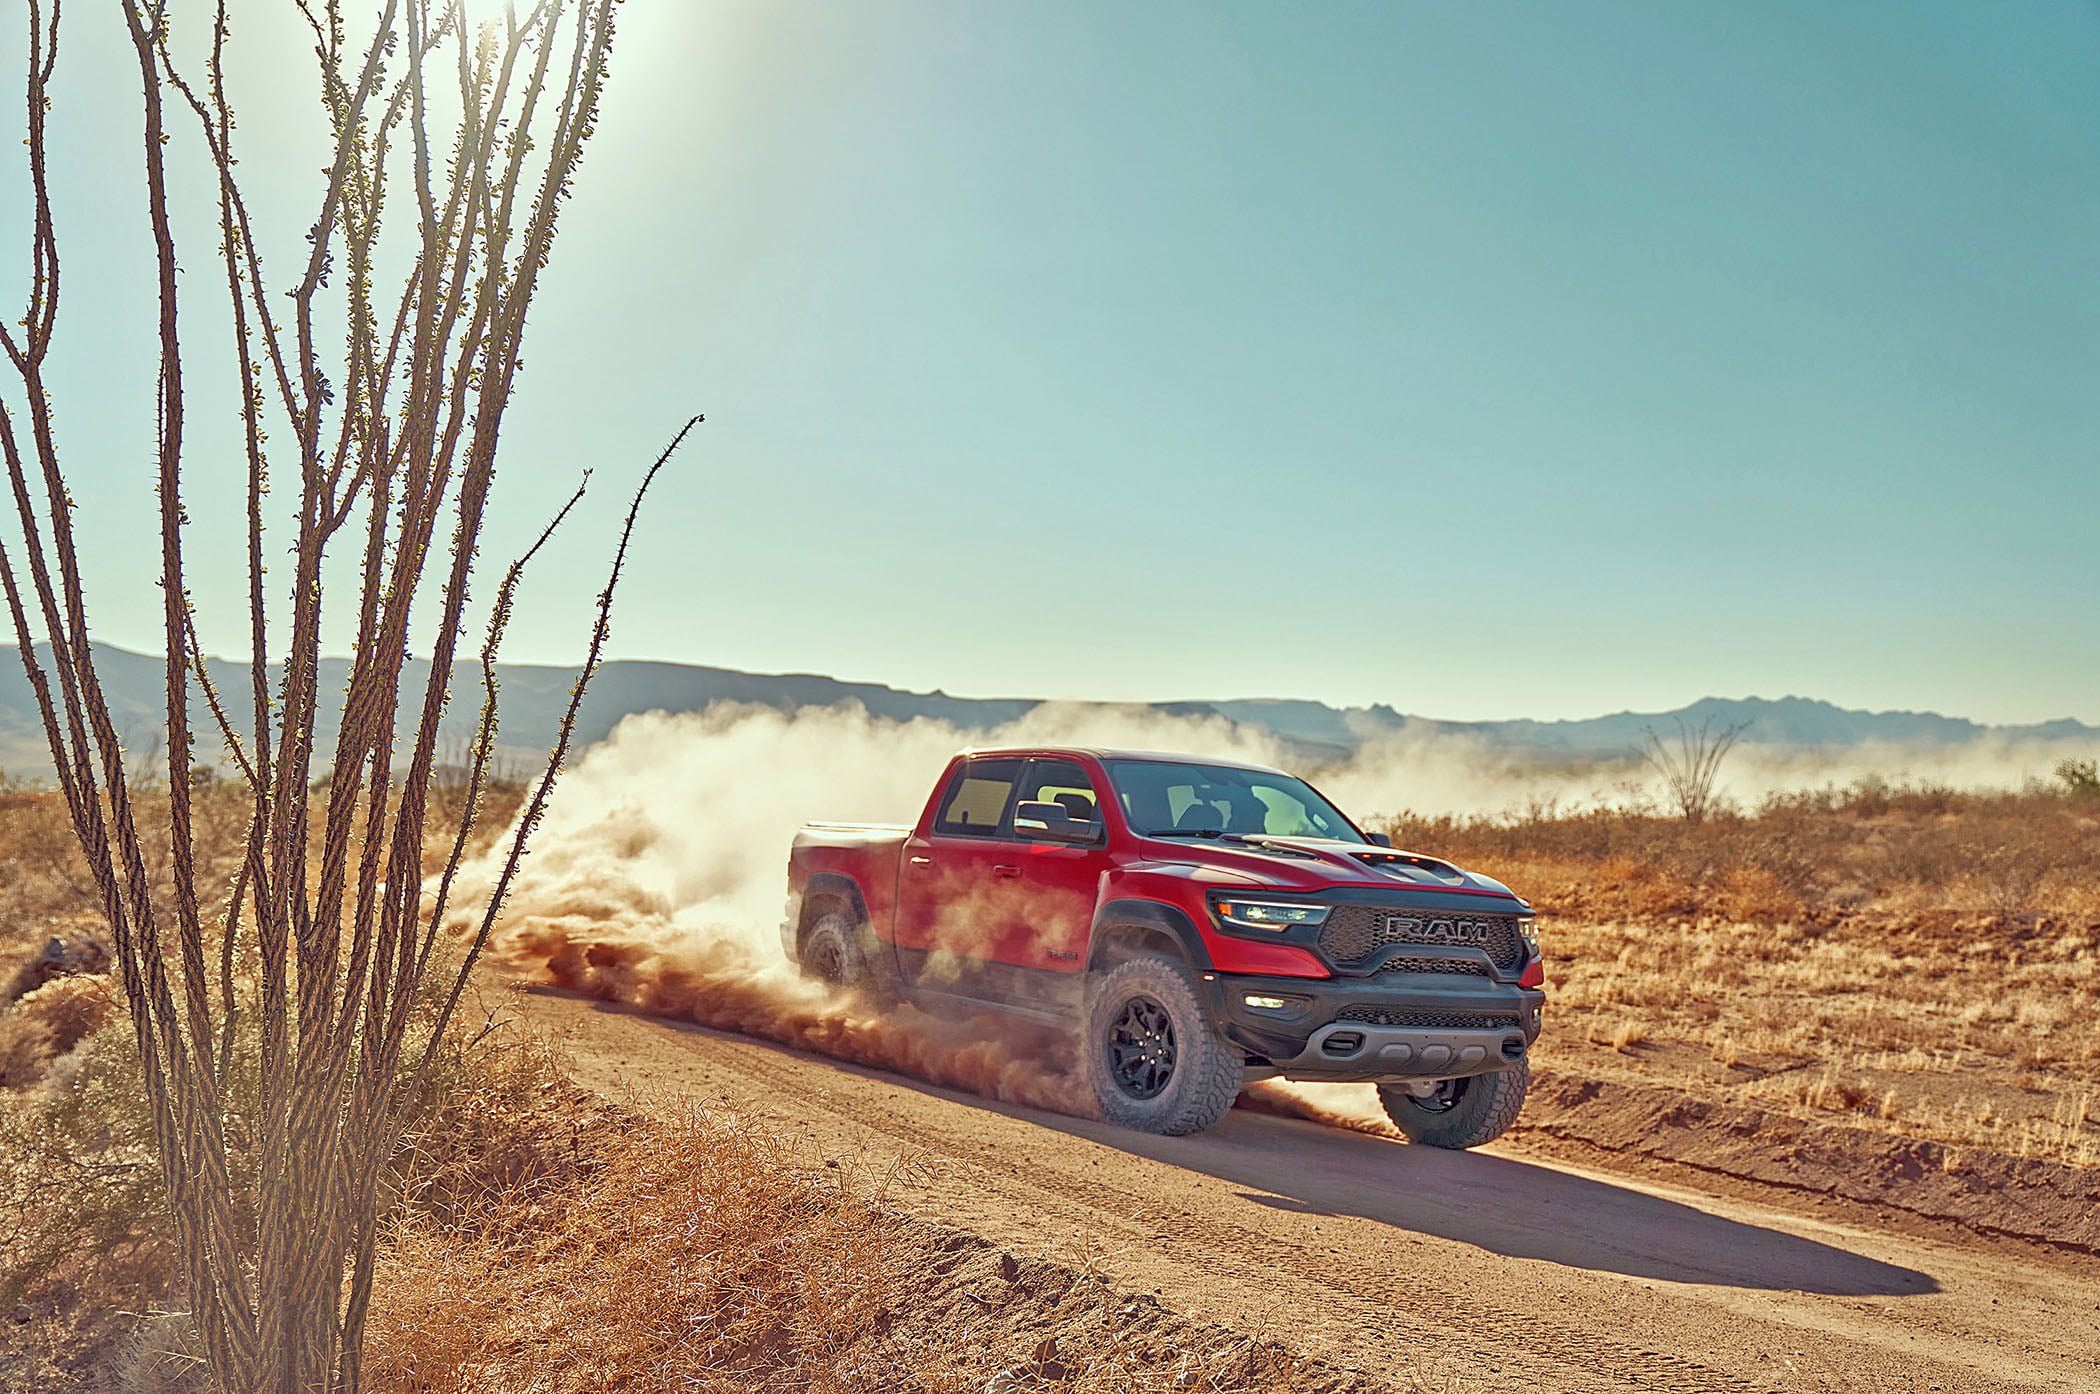 Red truck driving through desert dirt